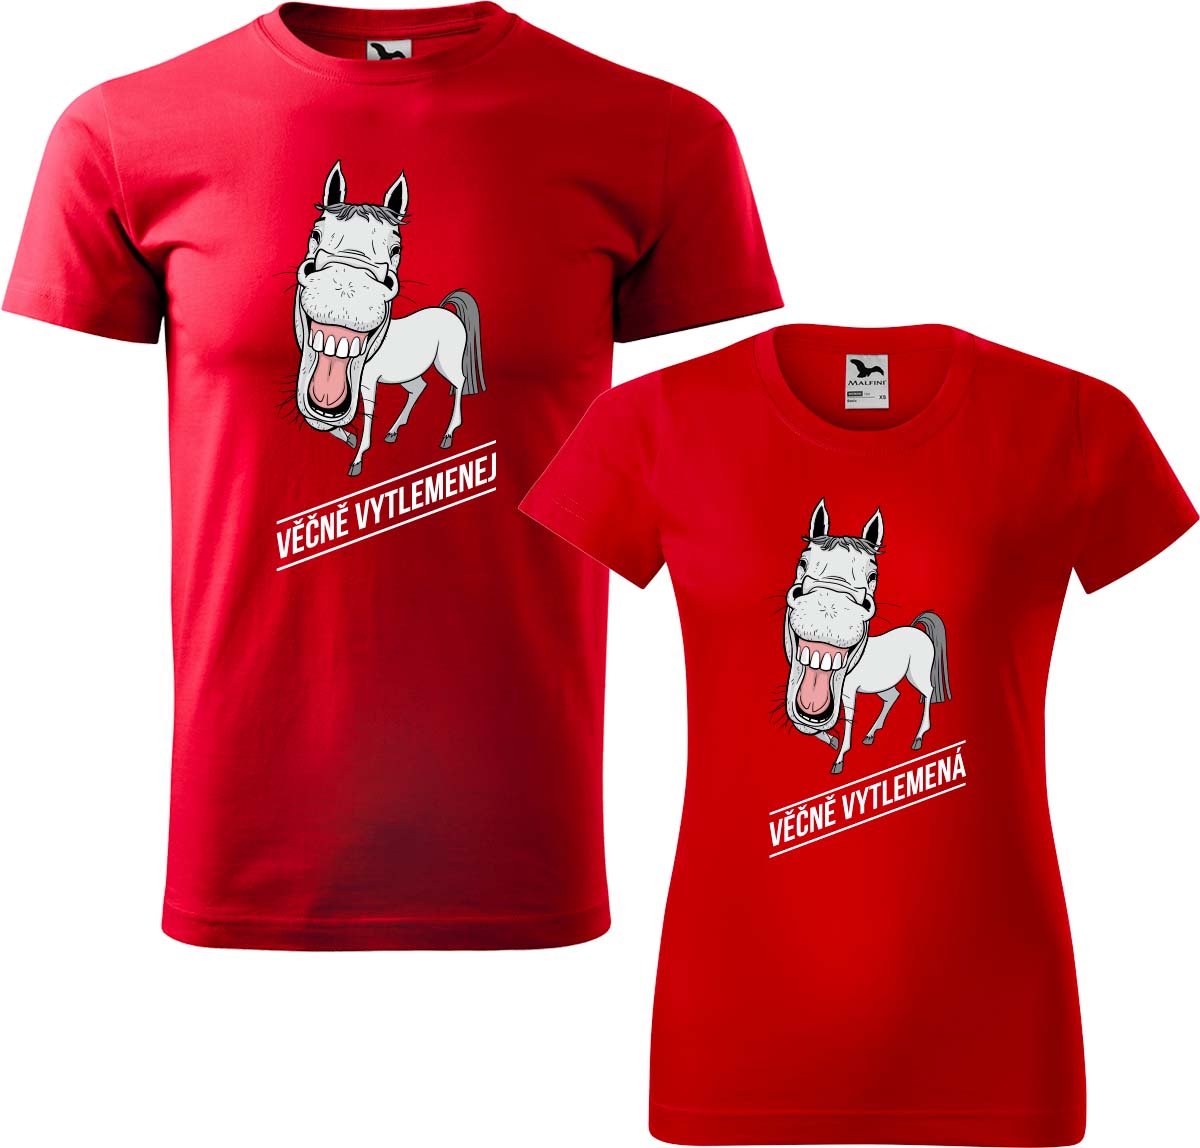 Trička pro páry - Věčně vytlemenej a věčně vytlemená Barva: Červená (07), Velikost dámské tričko: S, Velikost pánské tričko: XL